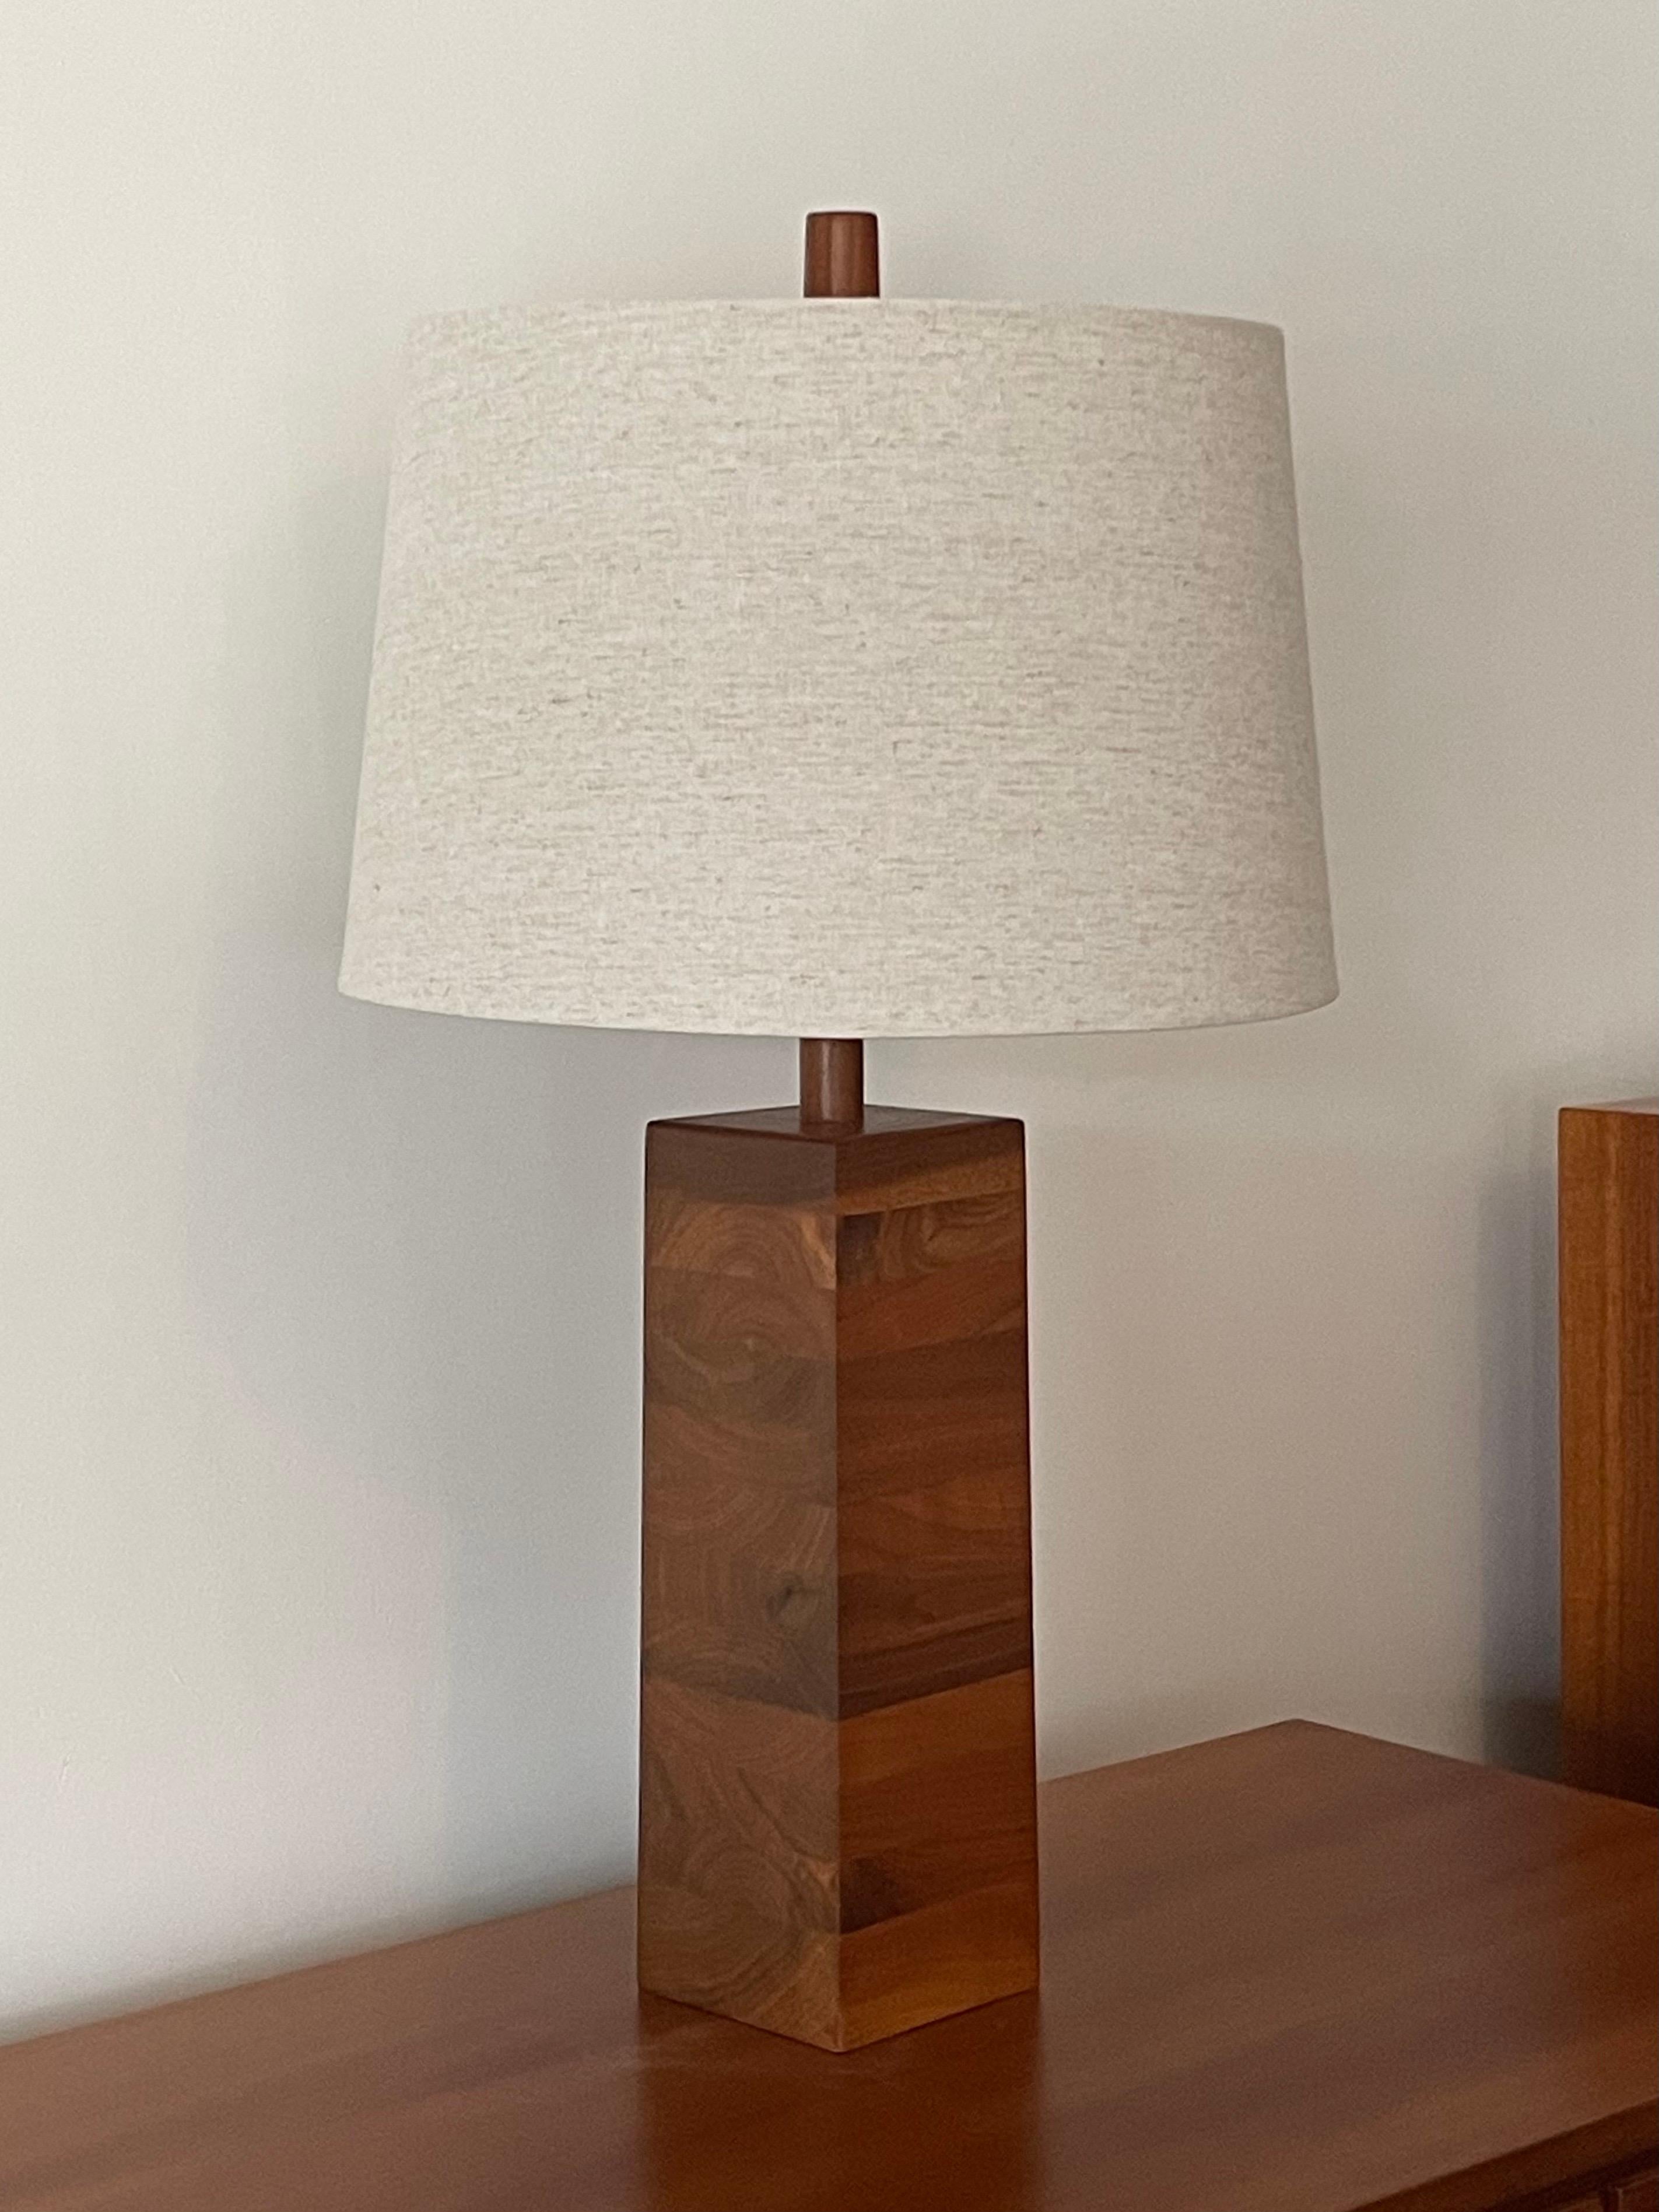 Lampe de table en noyer empilé conçue par les célèbres fabricants de lampes Jane et Gordon Martz. L'incroyable grain du bois crée une forme fluide contre les lignes austères de la lampe. Épi d'origine.

Dimensions générales :
27